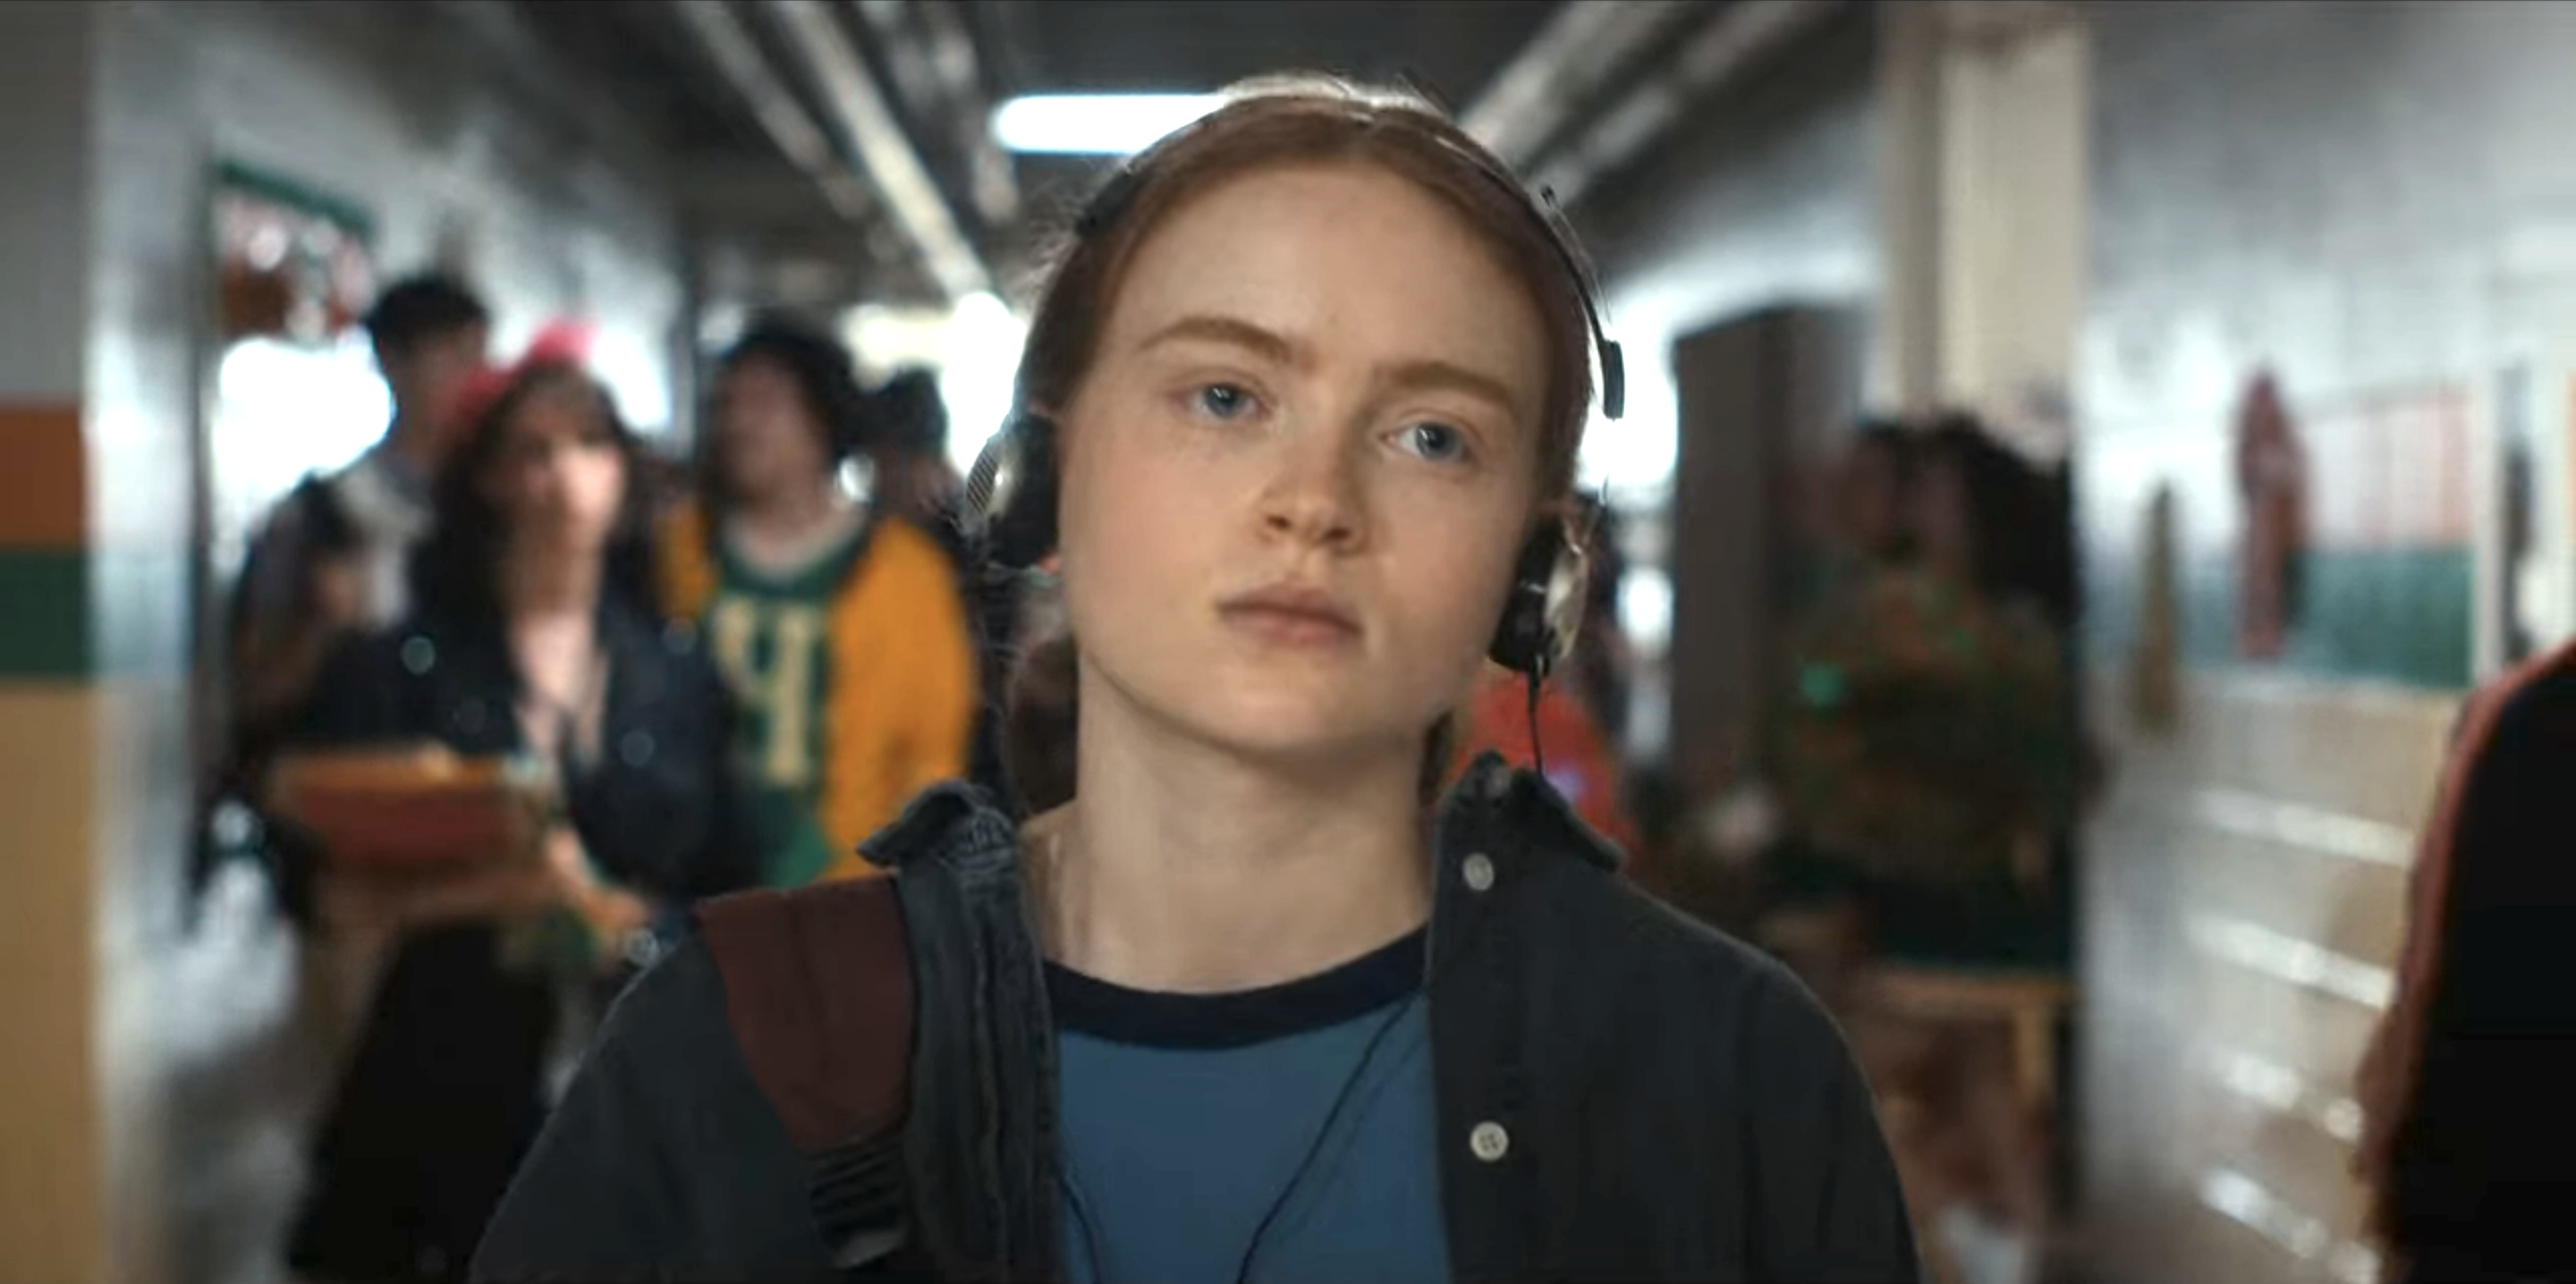 Max in the school hallway with headphones